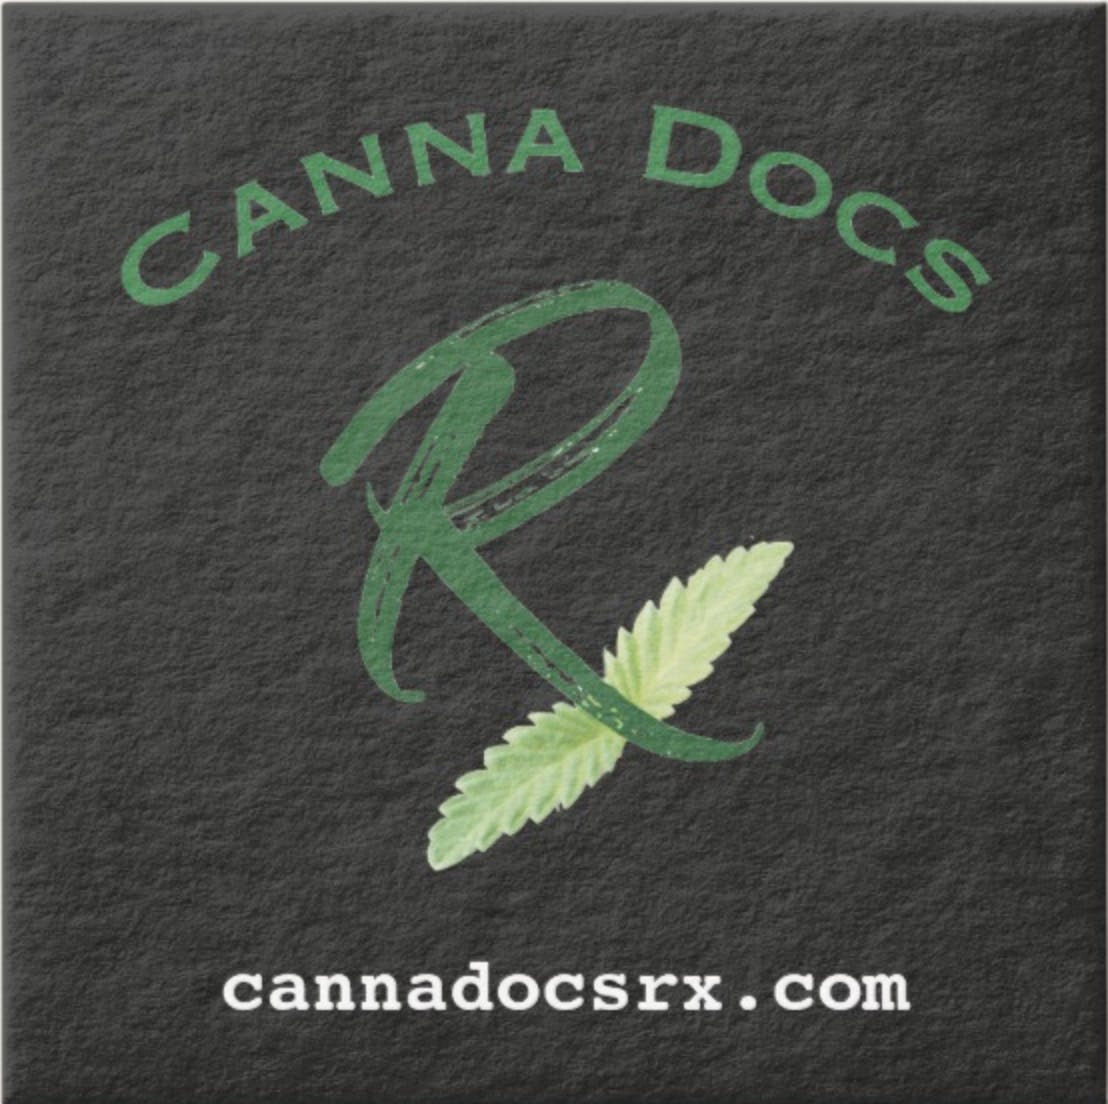 Canna Docs Rx - Medical Marijuana Doctors - Cannabizme.com